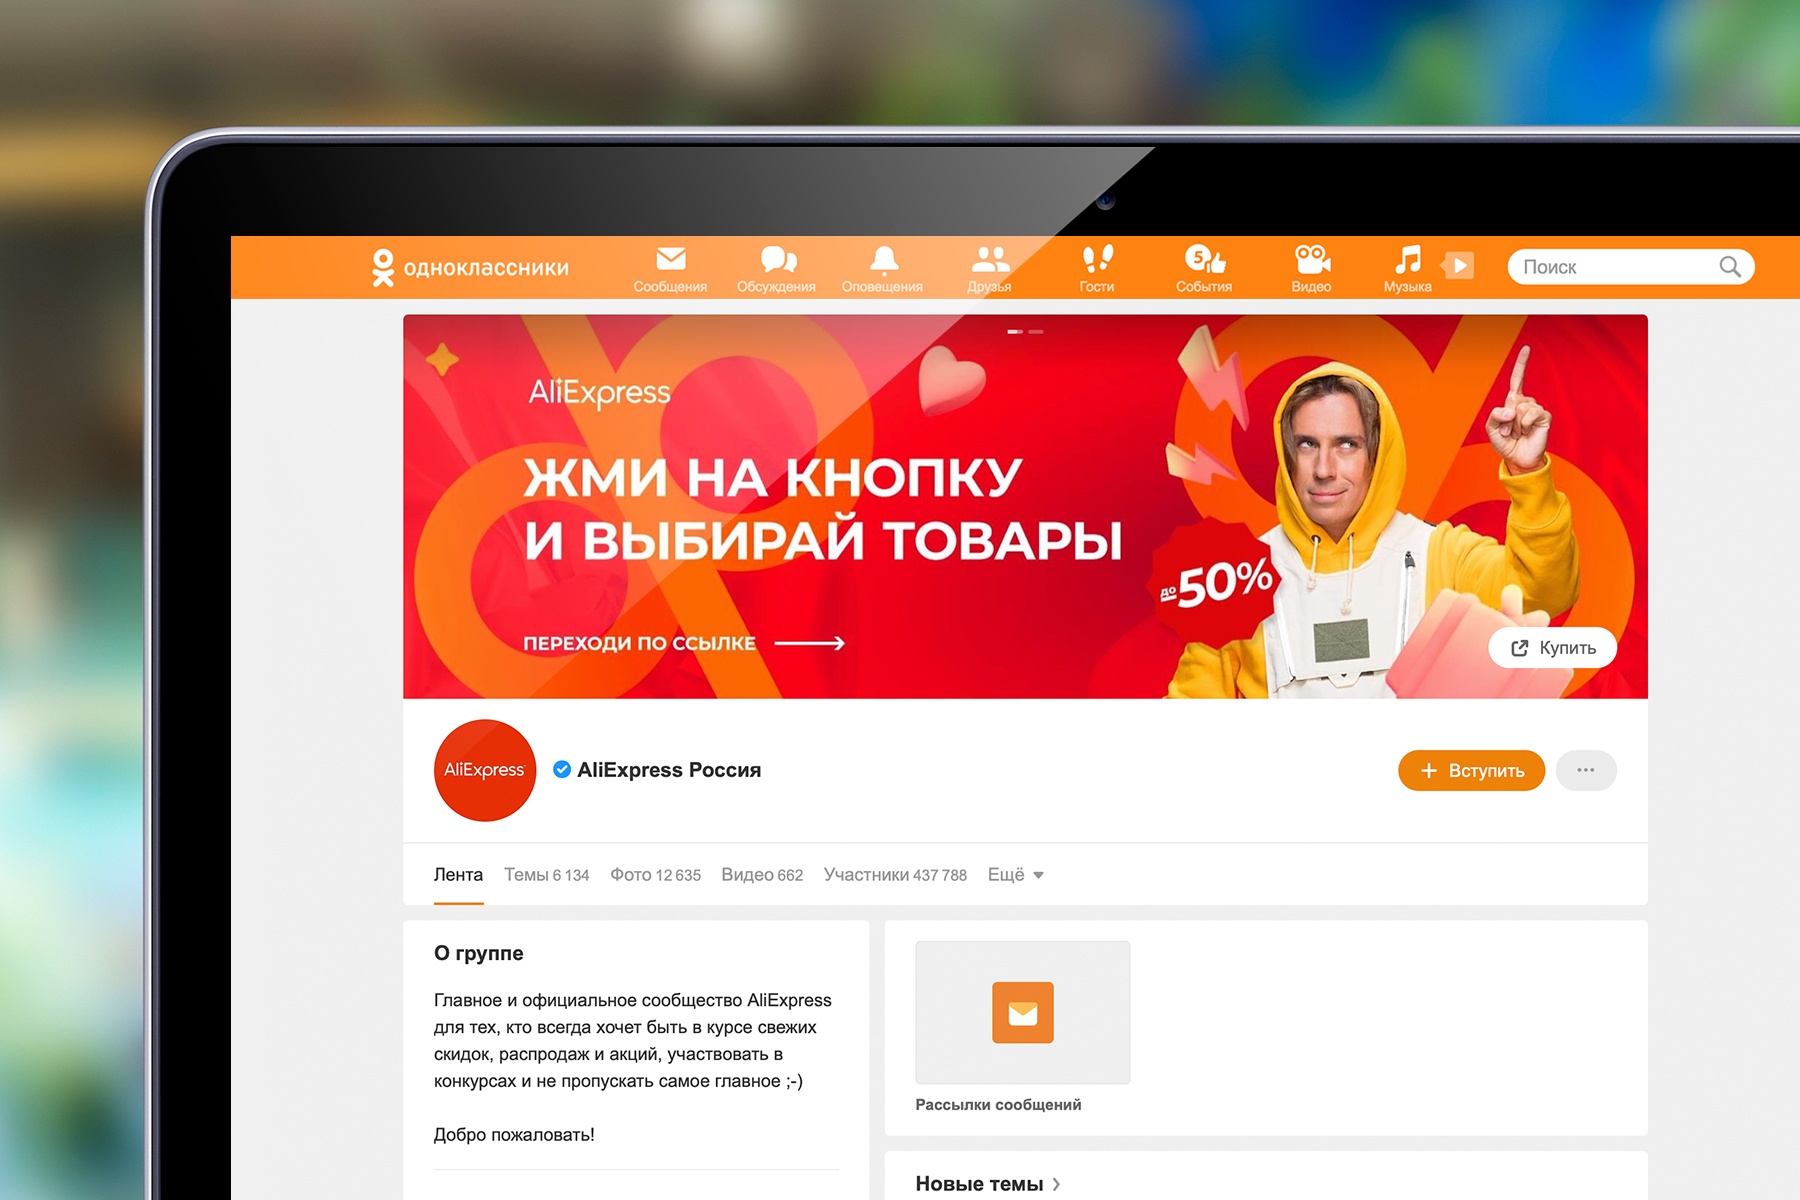 Как сменить обложку профиля в Одноклассниках: инструкция